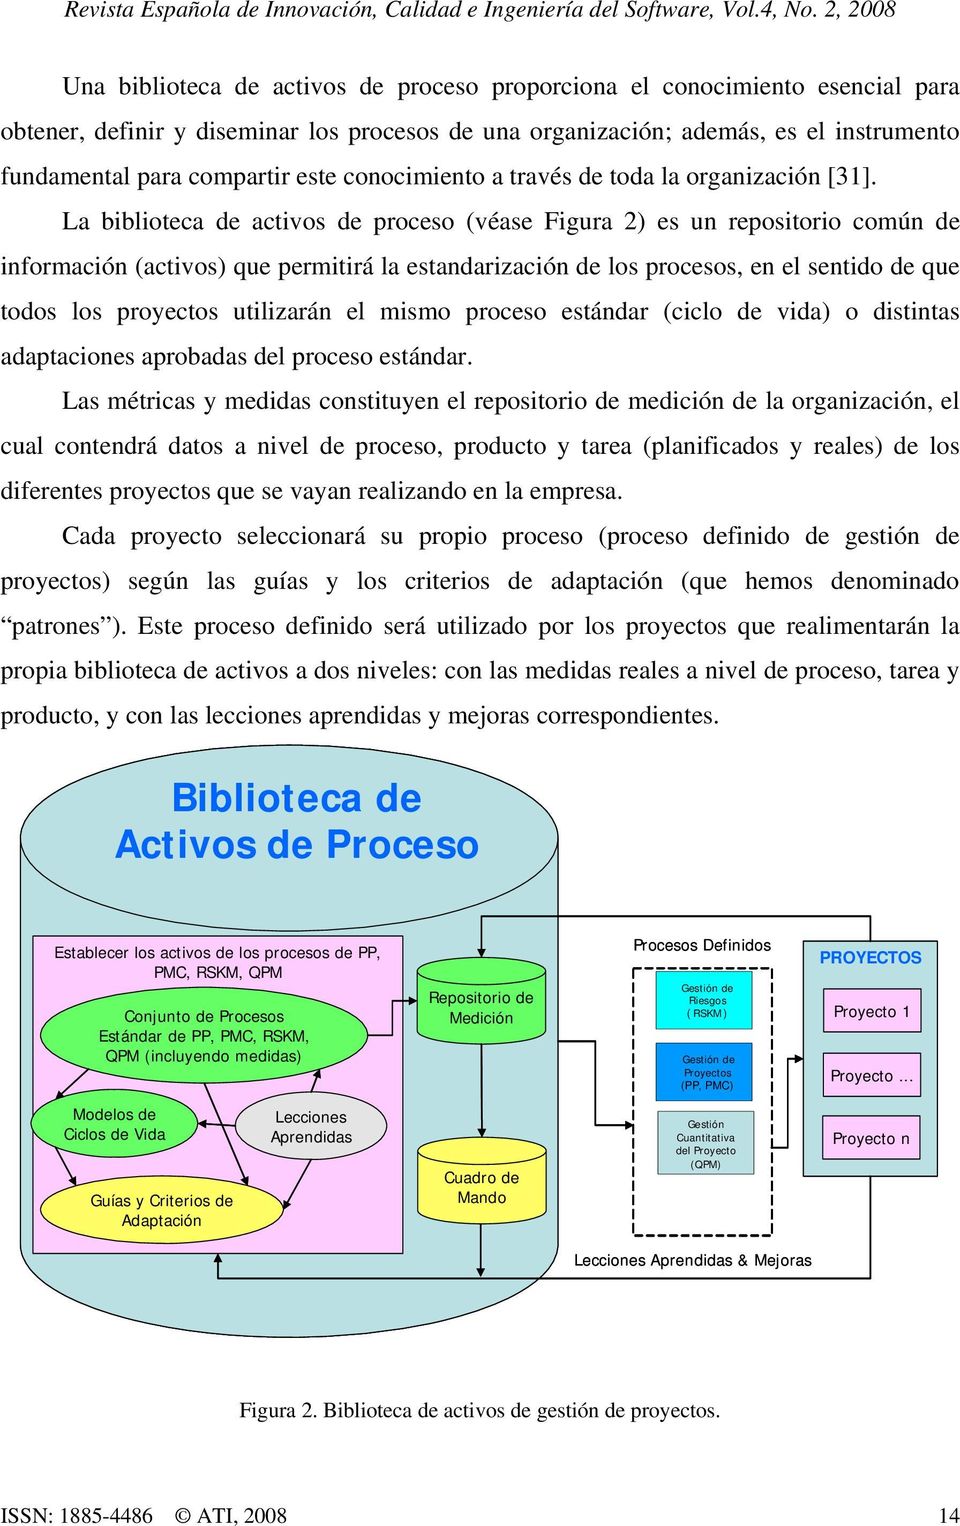 La biblioteca de activos de proceso (véase Figura 2) es un repositorio común de información (activos) que permitirá la estandarización de los procesos, en el sentido de que todos los proyectos